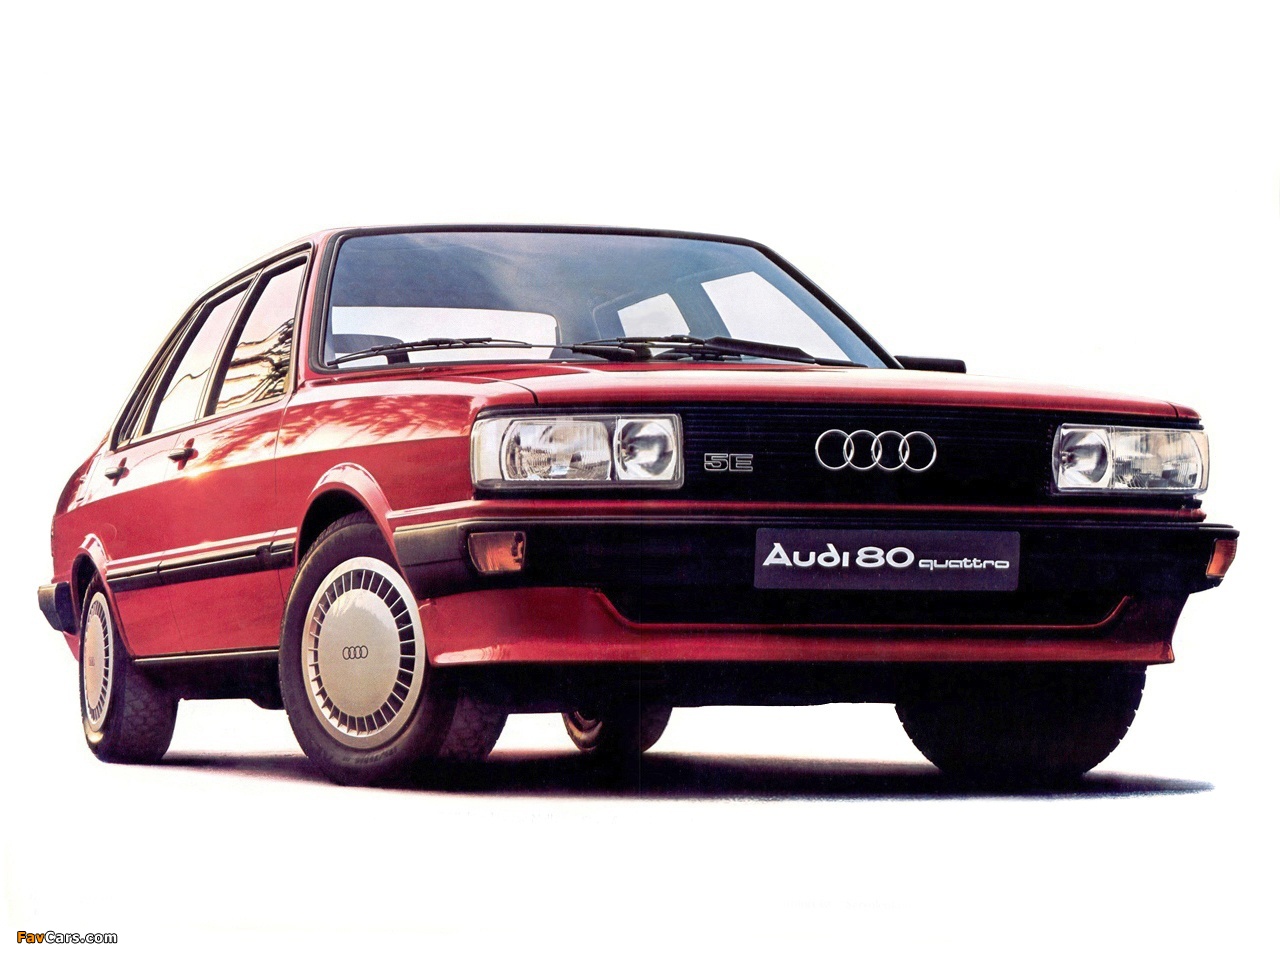 Audi 80 quattro B2 (1984-1986) images (1280x960)